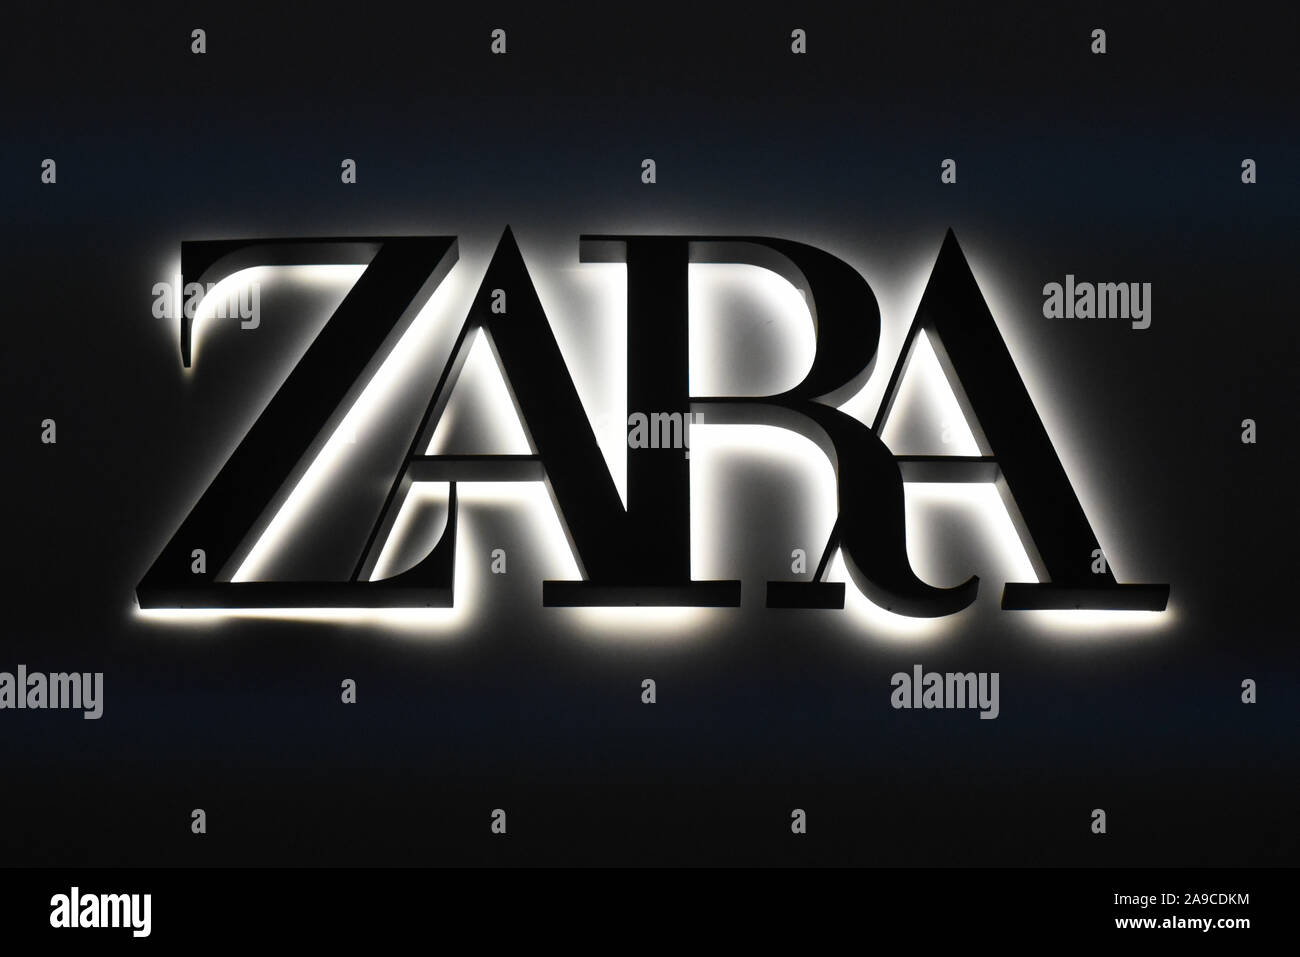 zara logo images